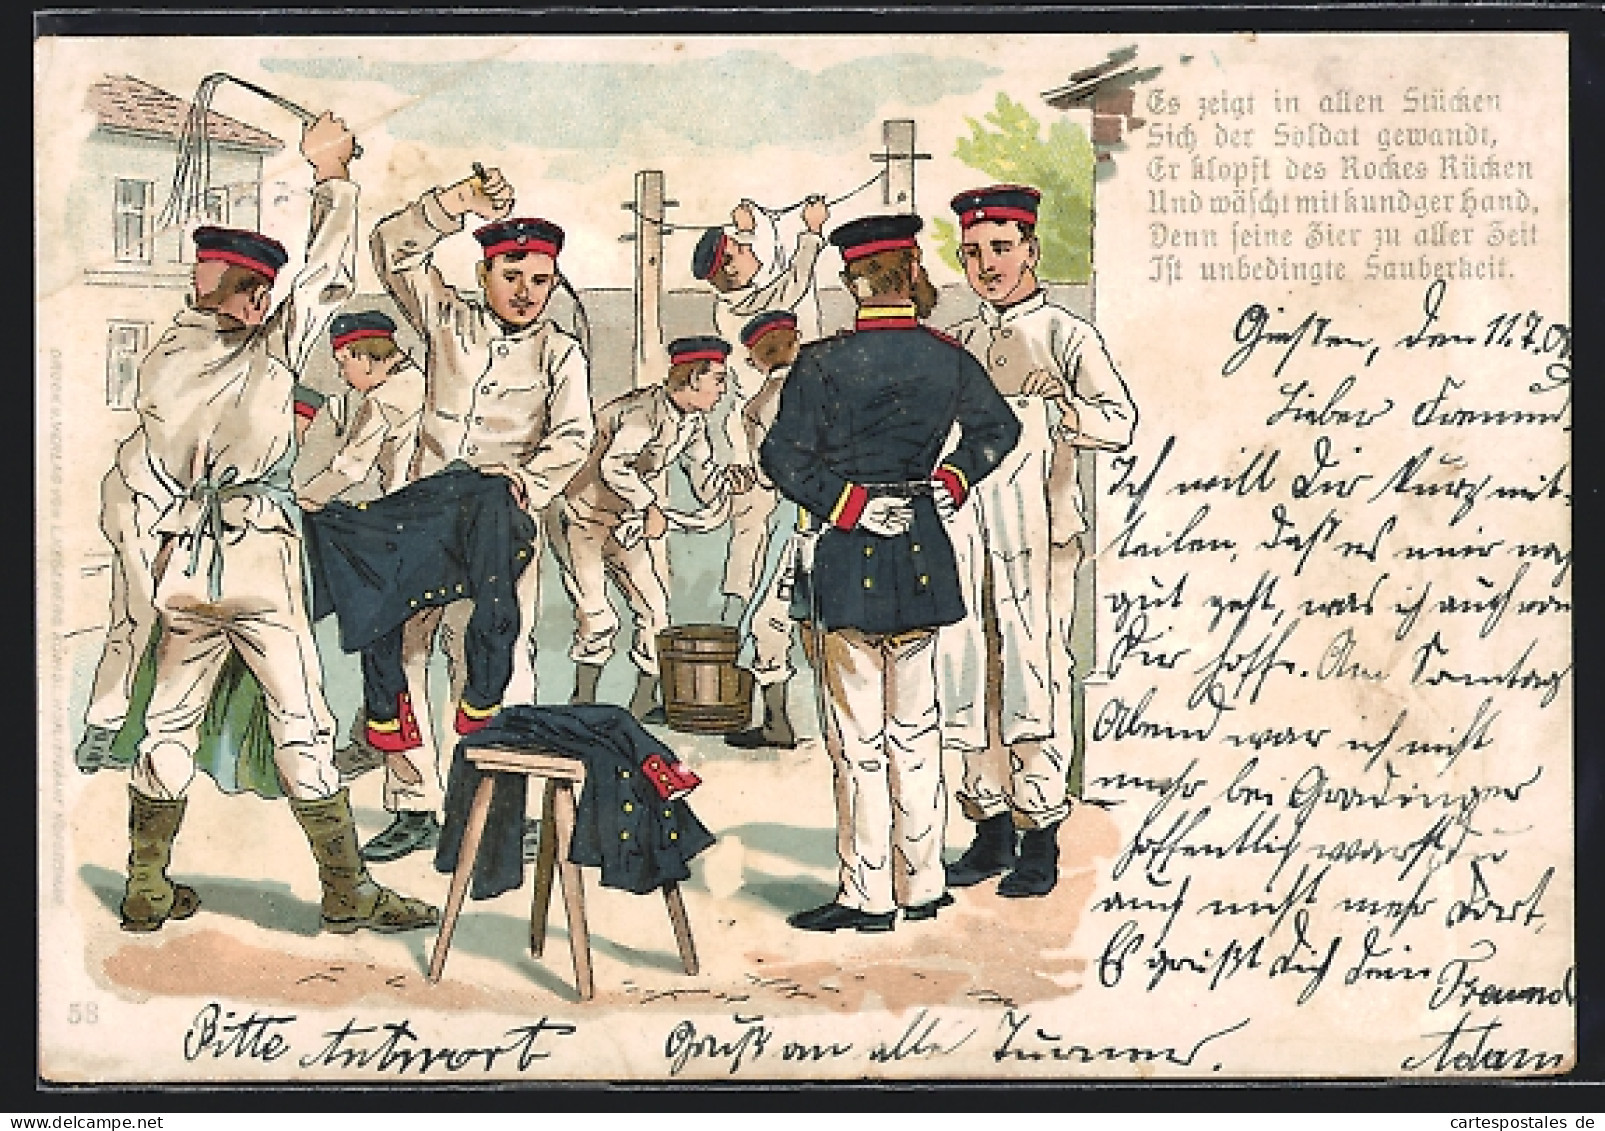 AK Soldaten Säubern Ihre Uniformen, 1. Weltkrieg  - Guerre 1914-18